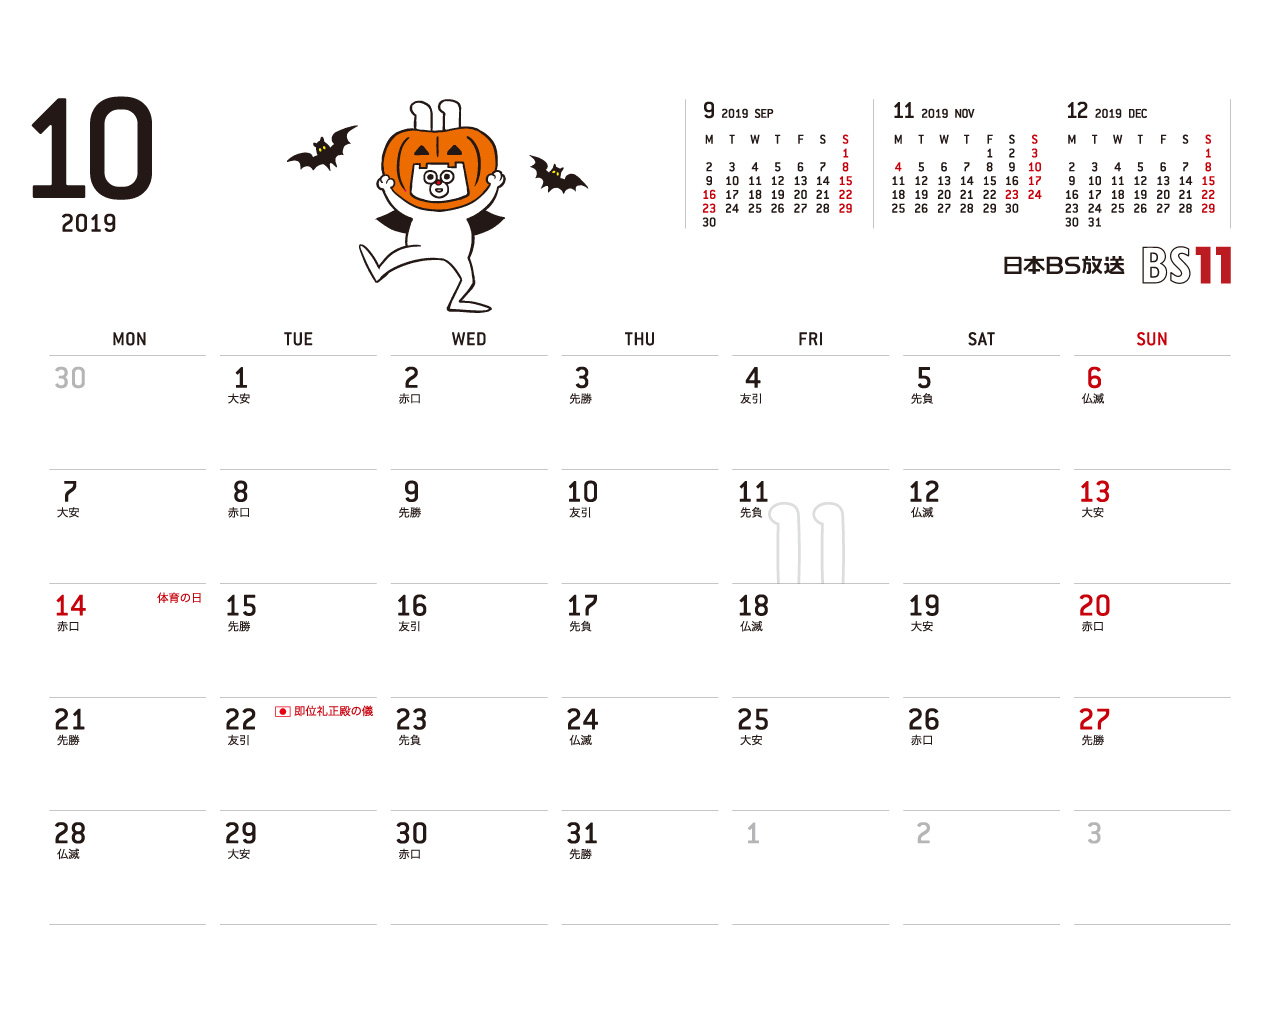 じゅういっちゃんのデジタルカレンダー19年10月 Bs11 イレブン いつでも無料放送